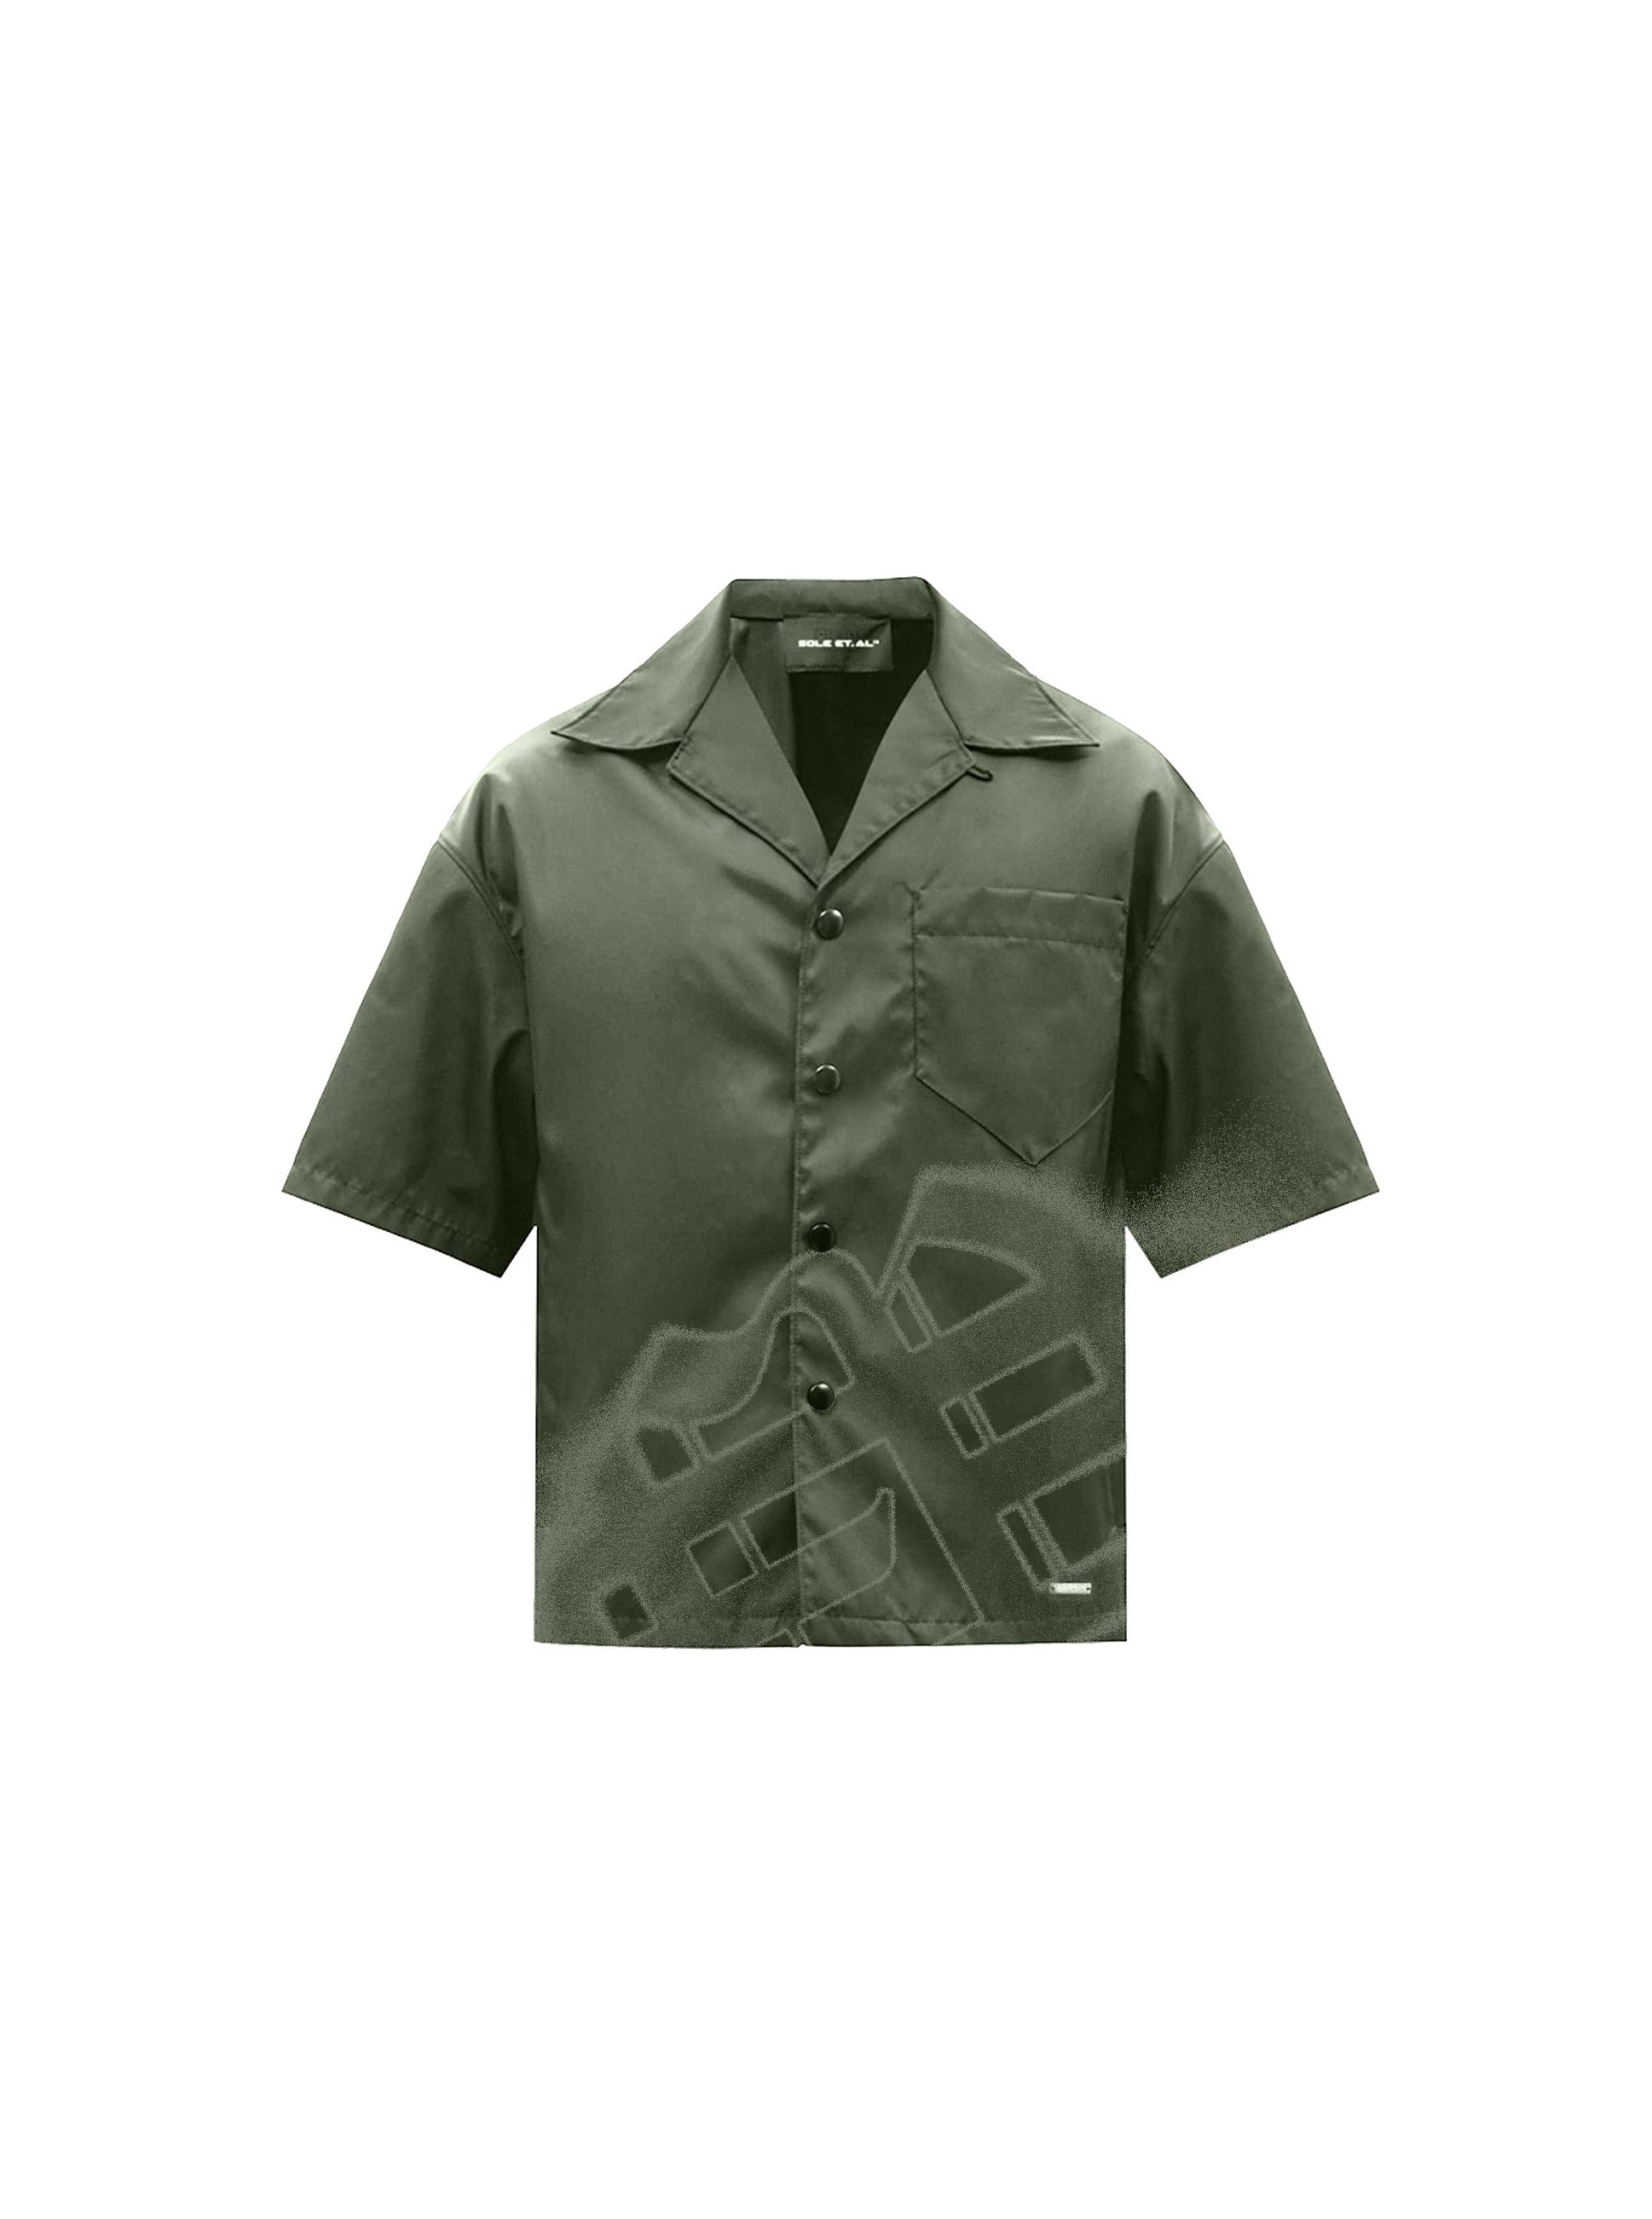 Sole et. Al Revølutiøn Silkesskjorta : Militärgrön